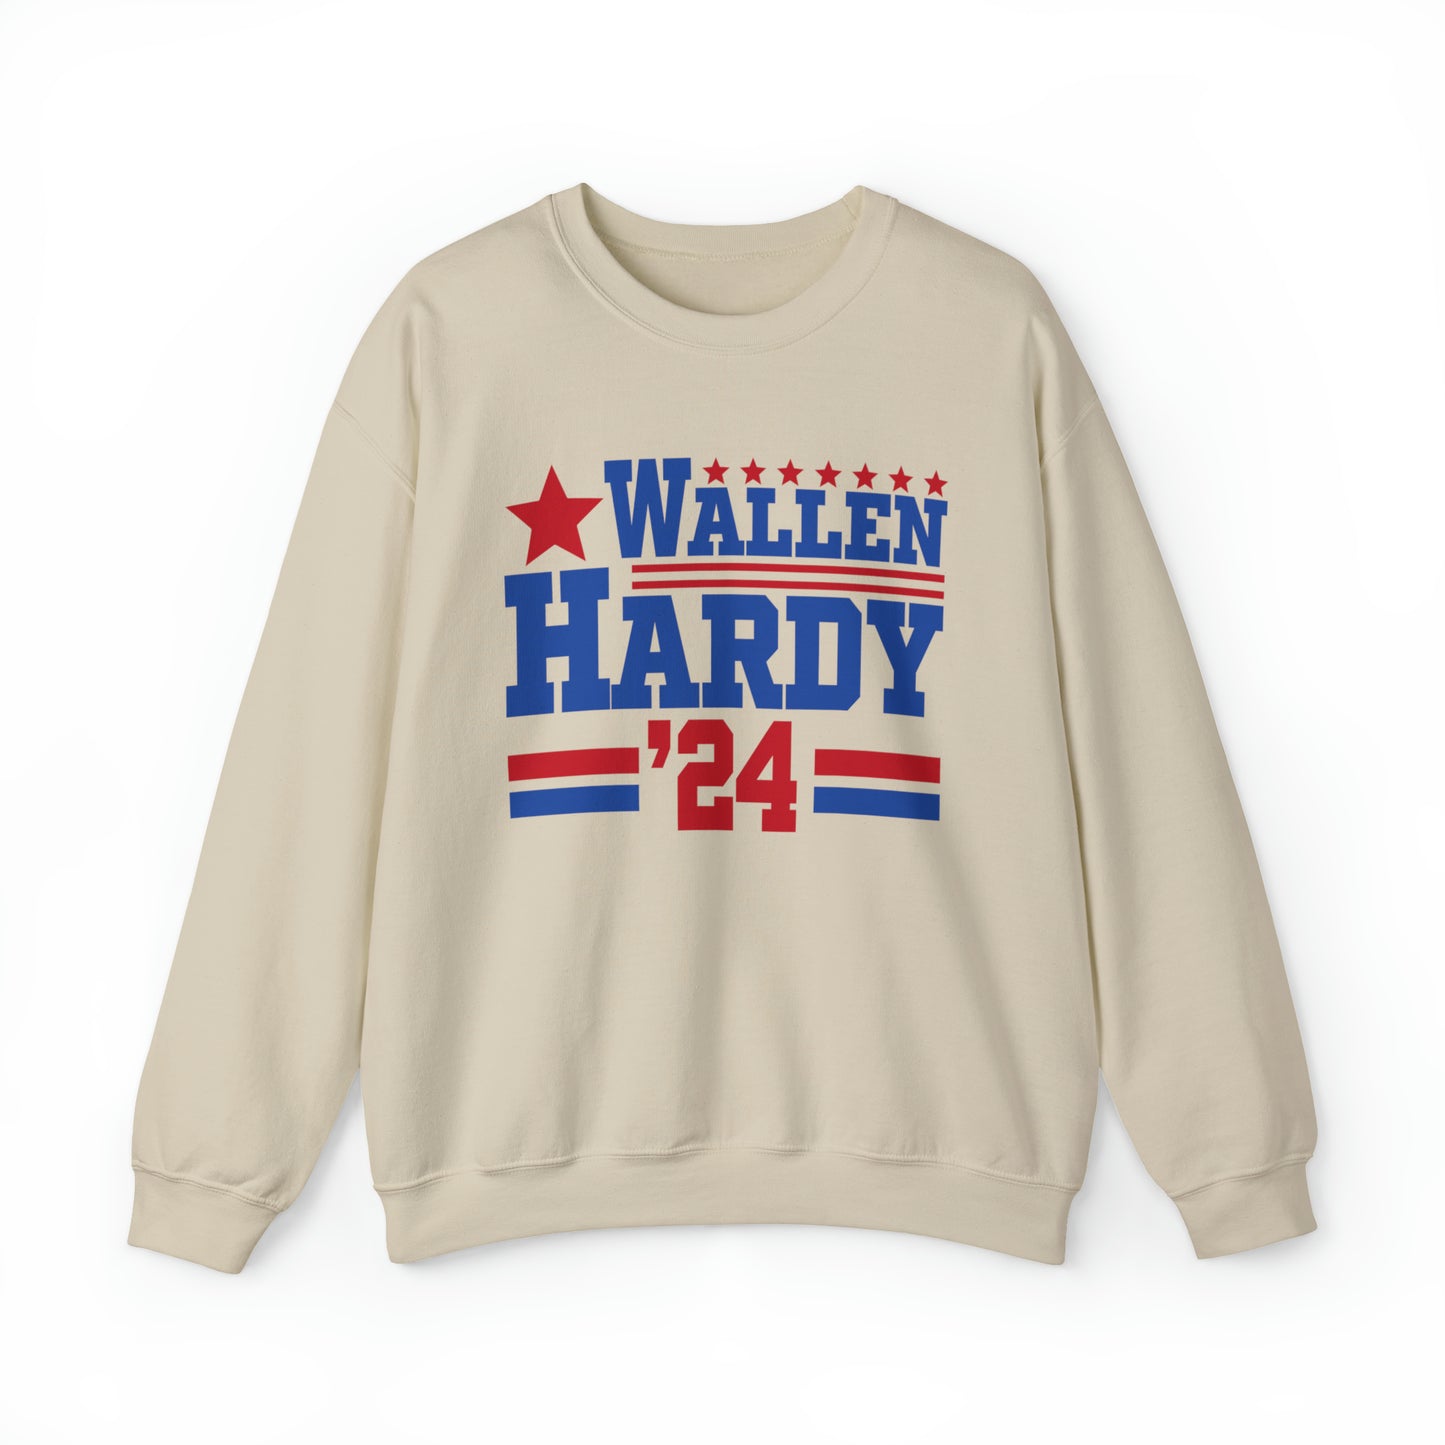 Wallen Hardy 24 Concert Sweatshirt